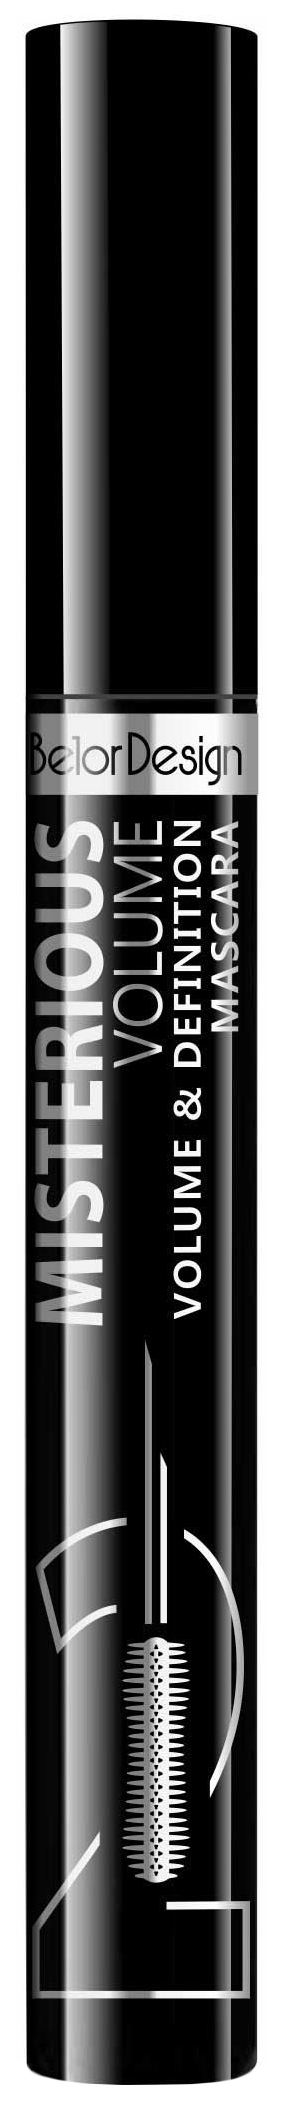 Тушь для ресниц Belor Design Misterious Volume объёмная, разделяющая, чёрная тушь для ресниц belor design make it wow multi volume mascara 11 8 г